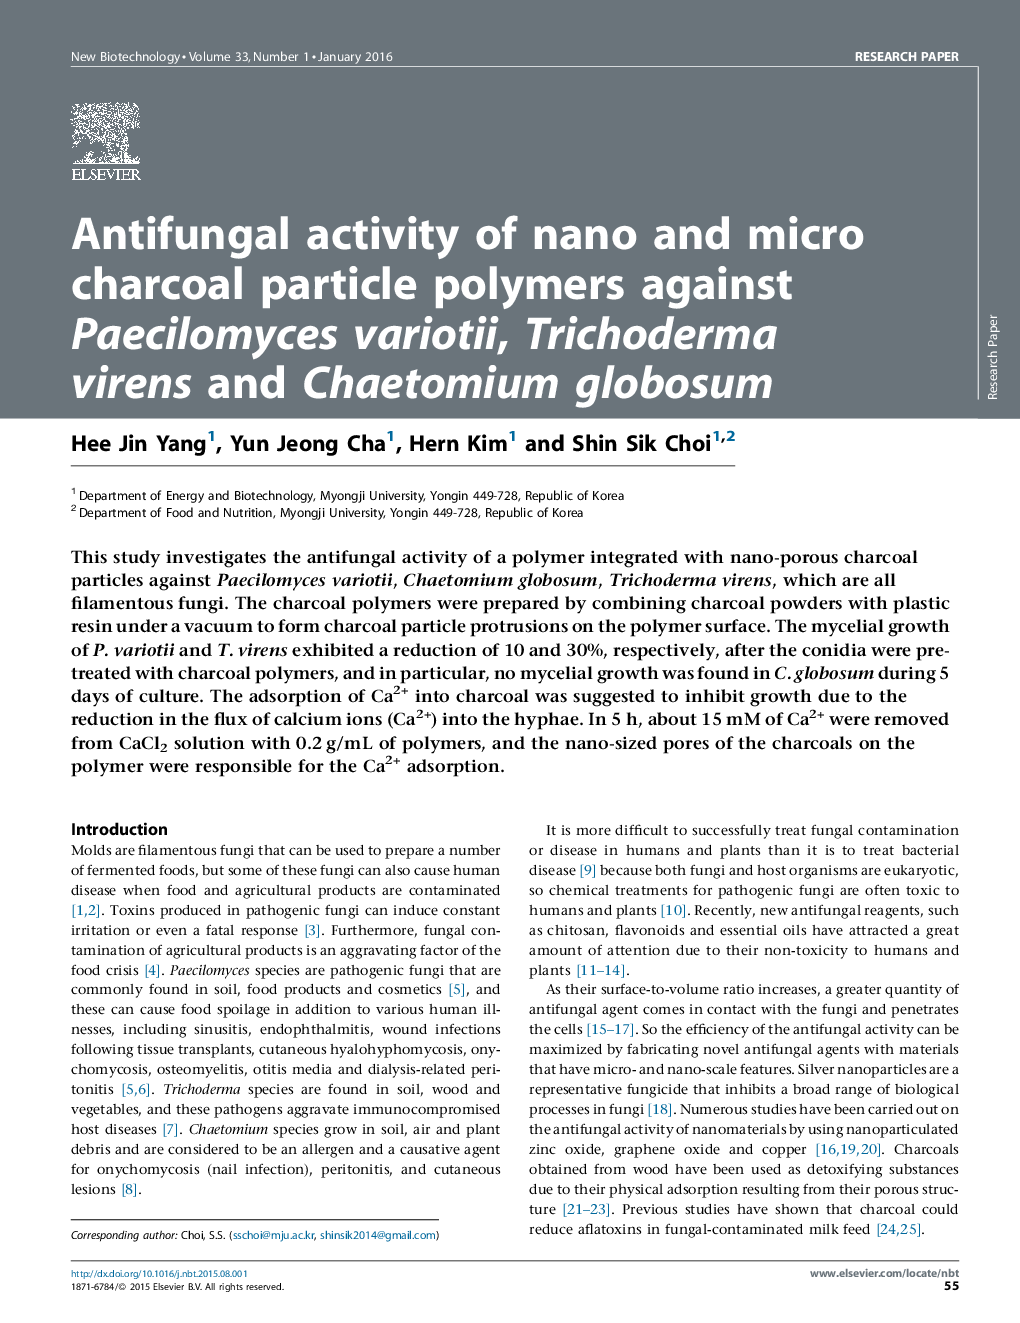 فعالیت ضد قارچی پلیمرهای ذرات نانو و ذغال چوب در برابر ویروس Paecilomyces variotii، Trichoderma virens و Chaetomium globosum